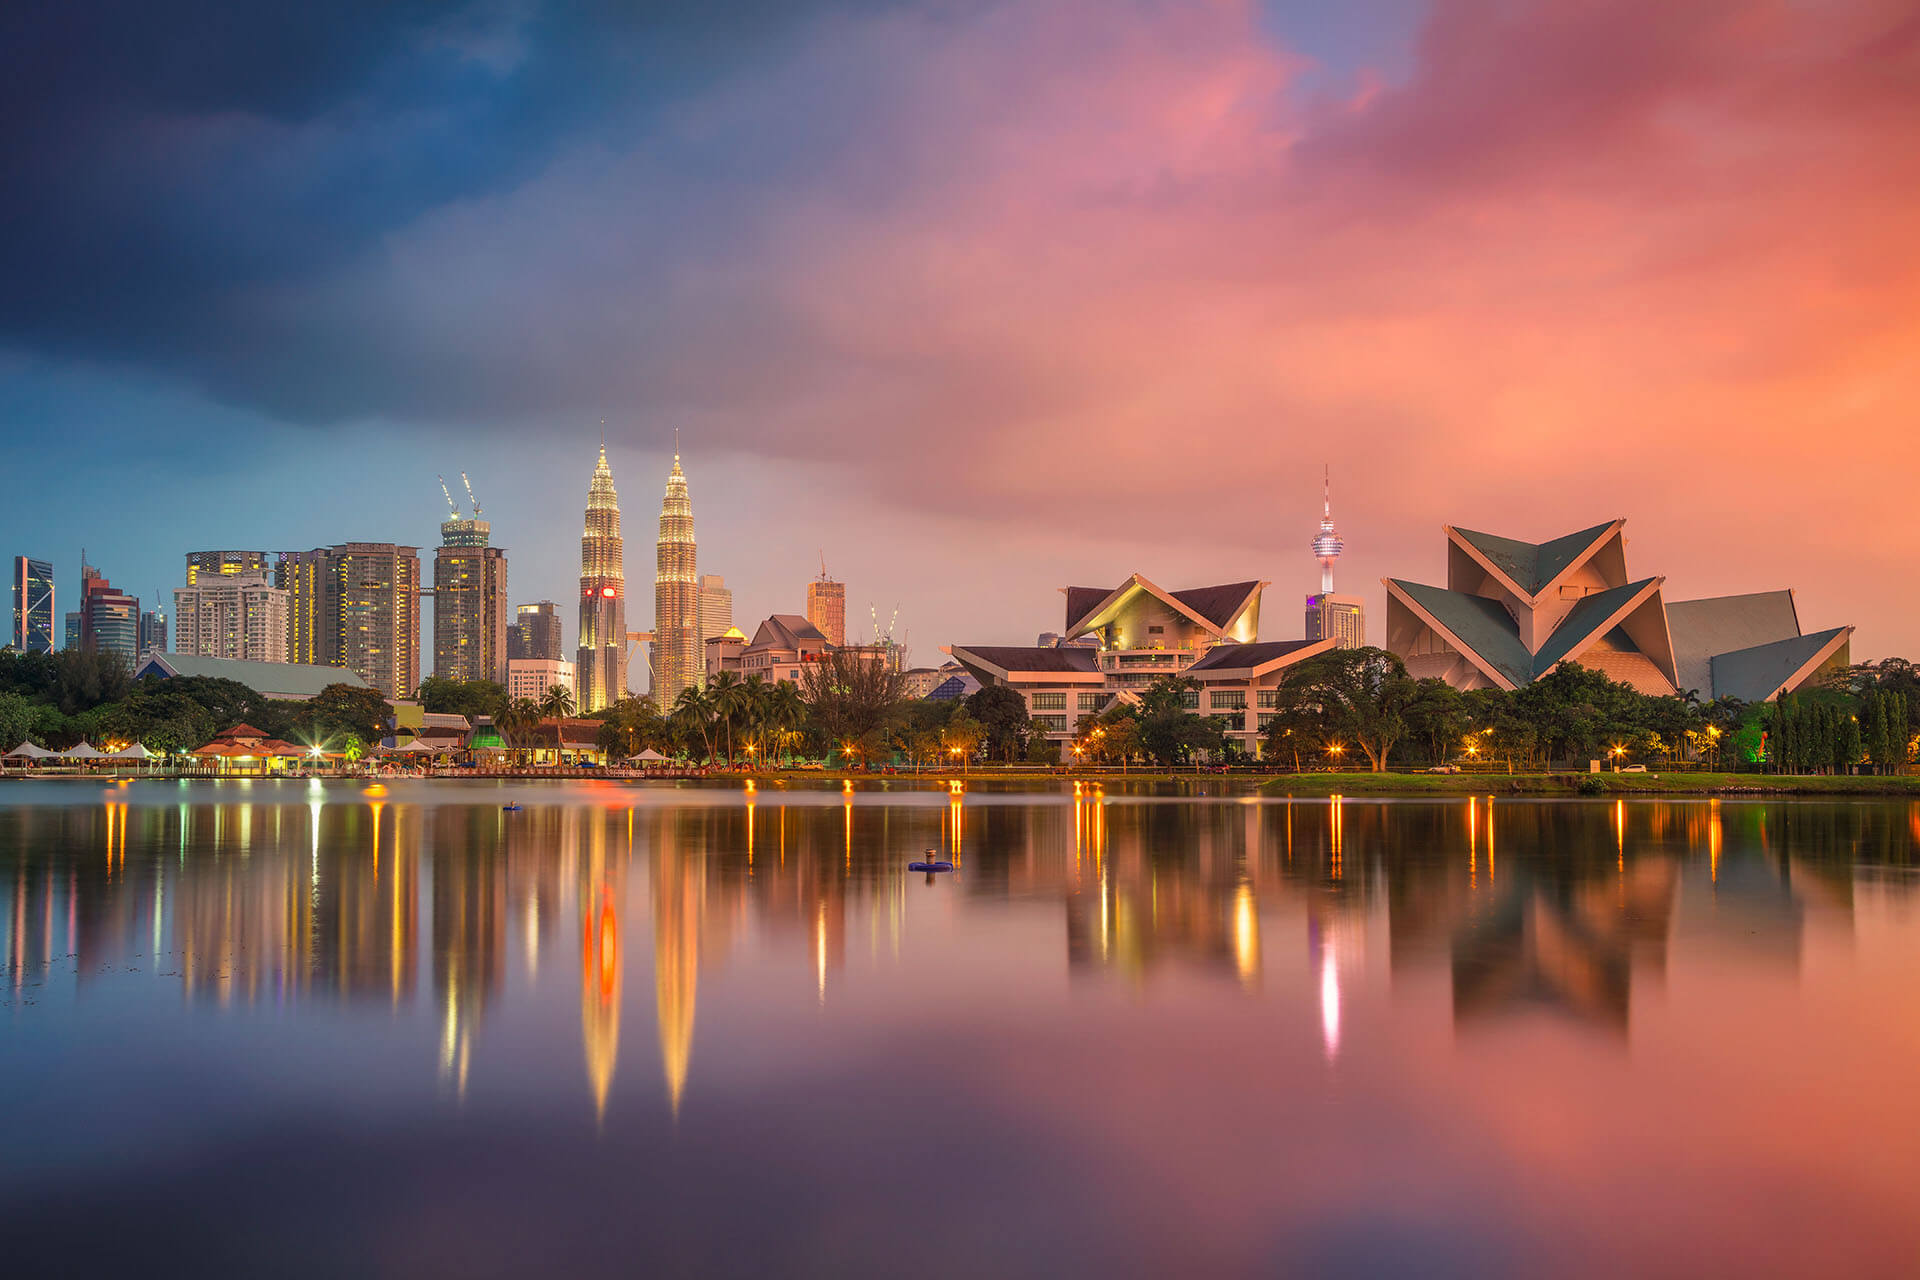 Malaysia: Digital Arrival Card Introduced